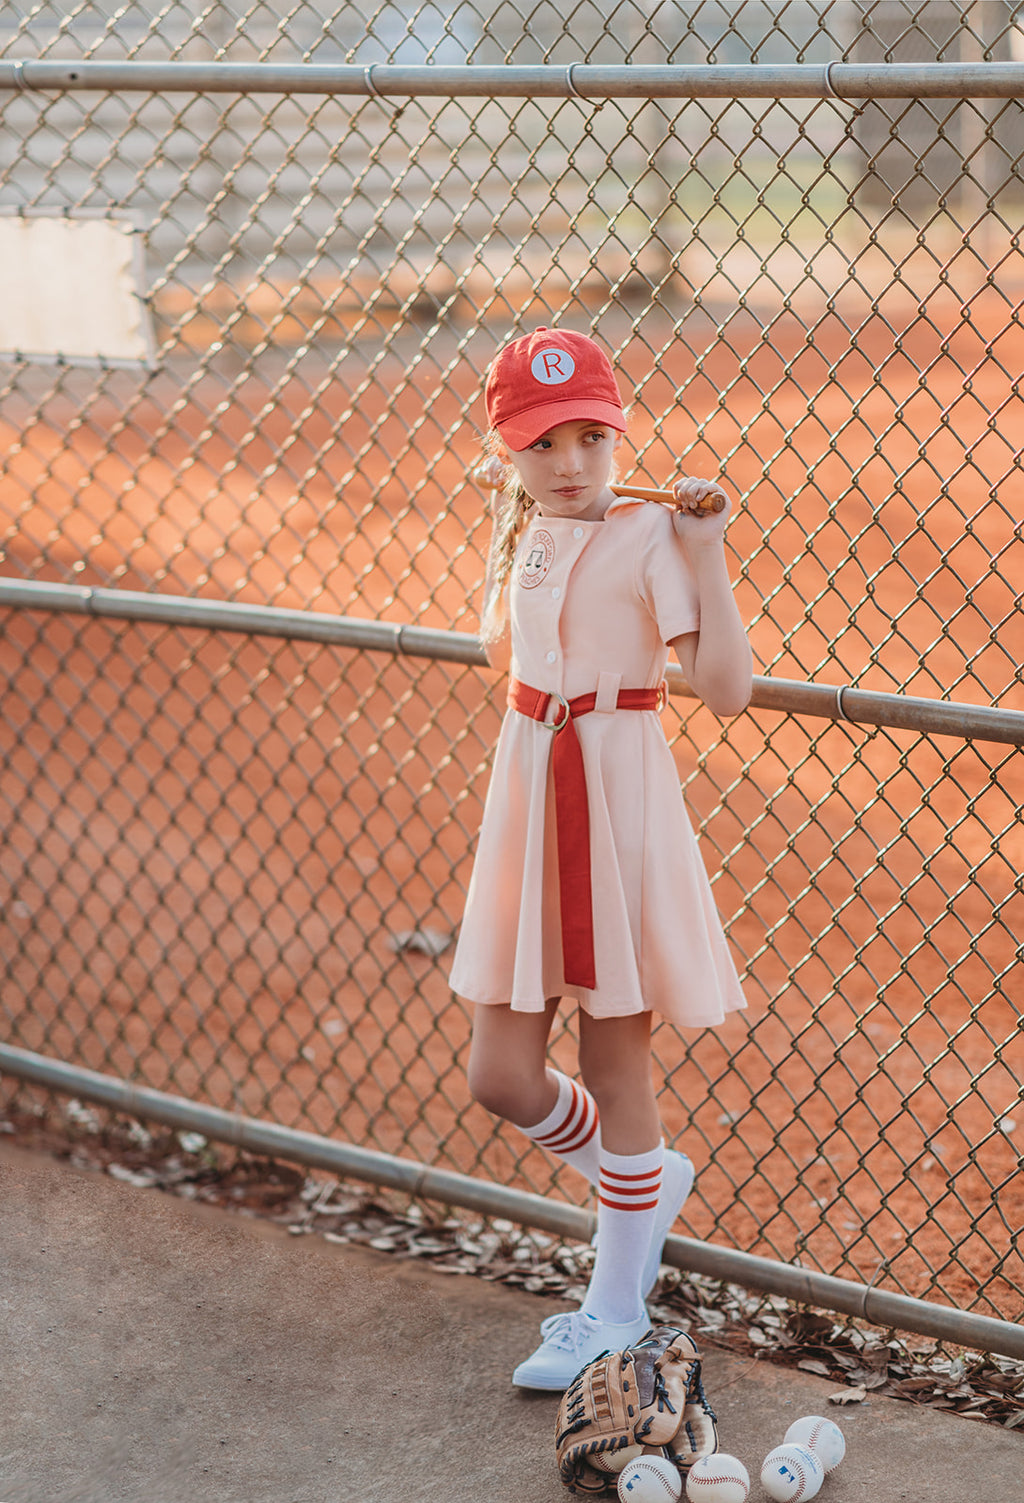 Oldtime Baseball Game – Home Uniforms – Oldtime Baseball Game